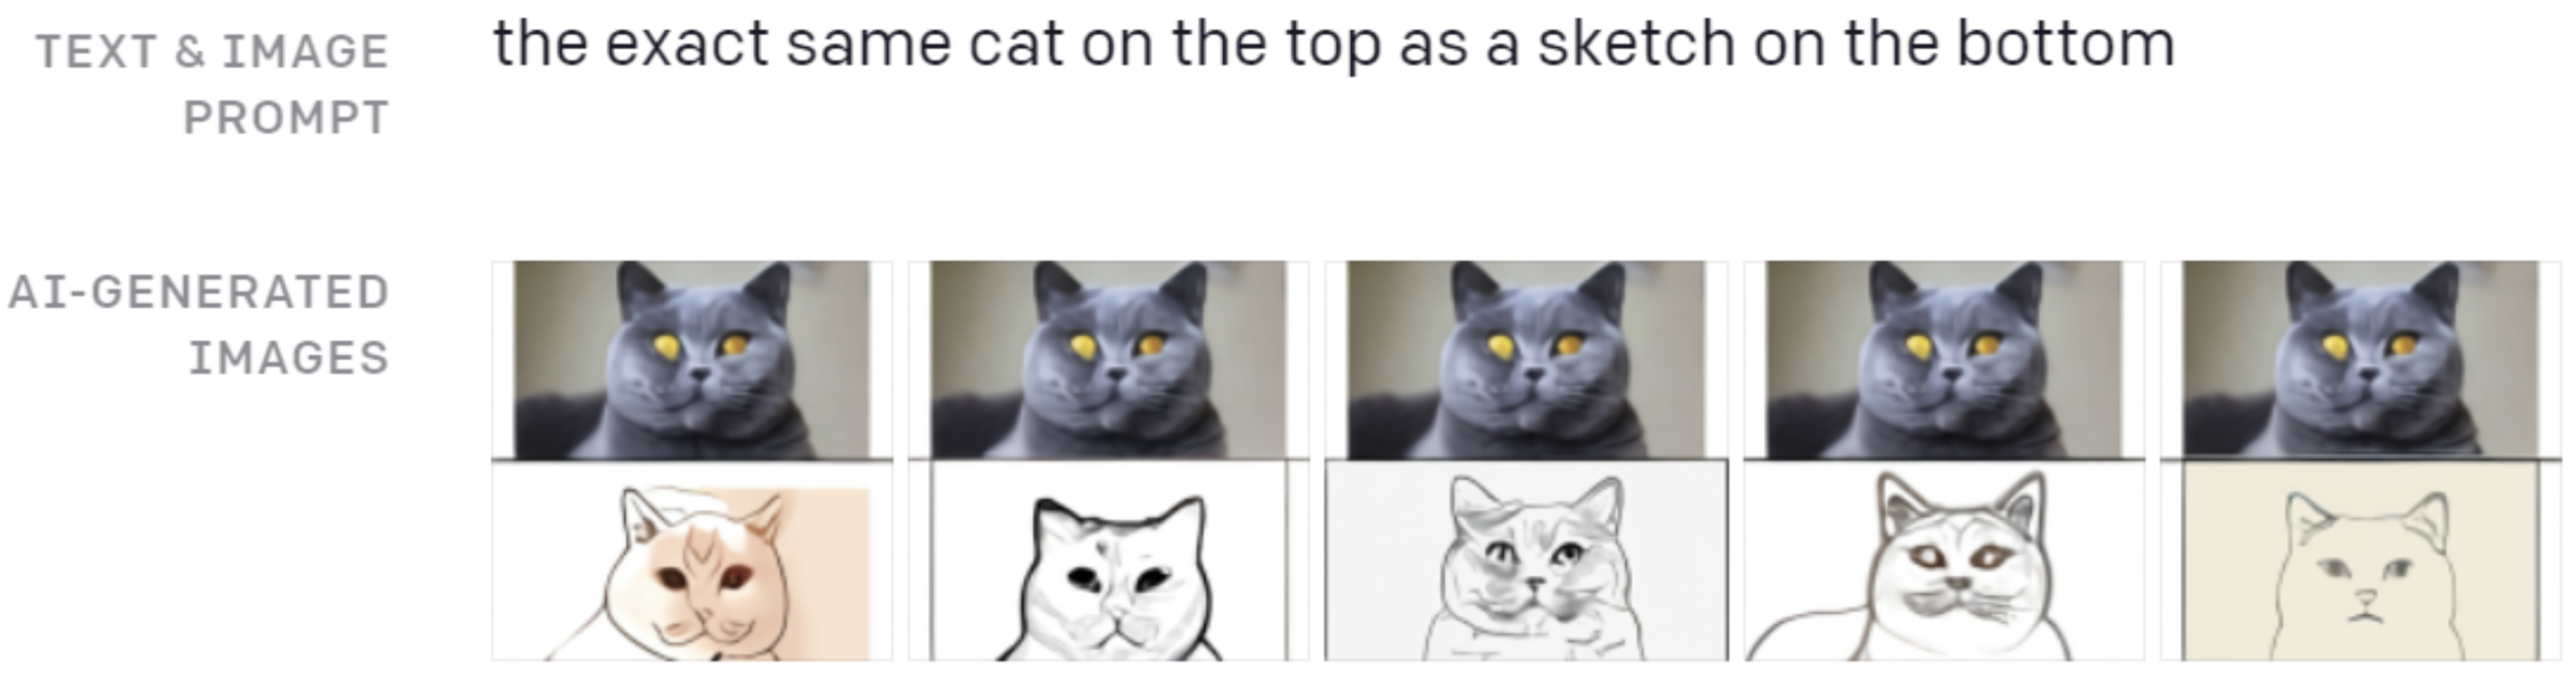 Hình 3: Bản phác thảo chính xác của con mèo ở phía trên xuống phía dưới